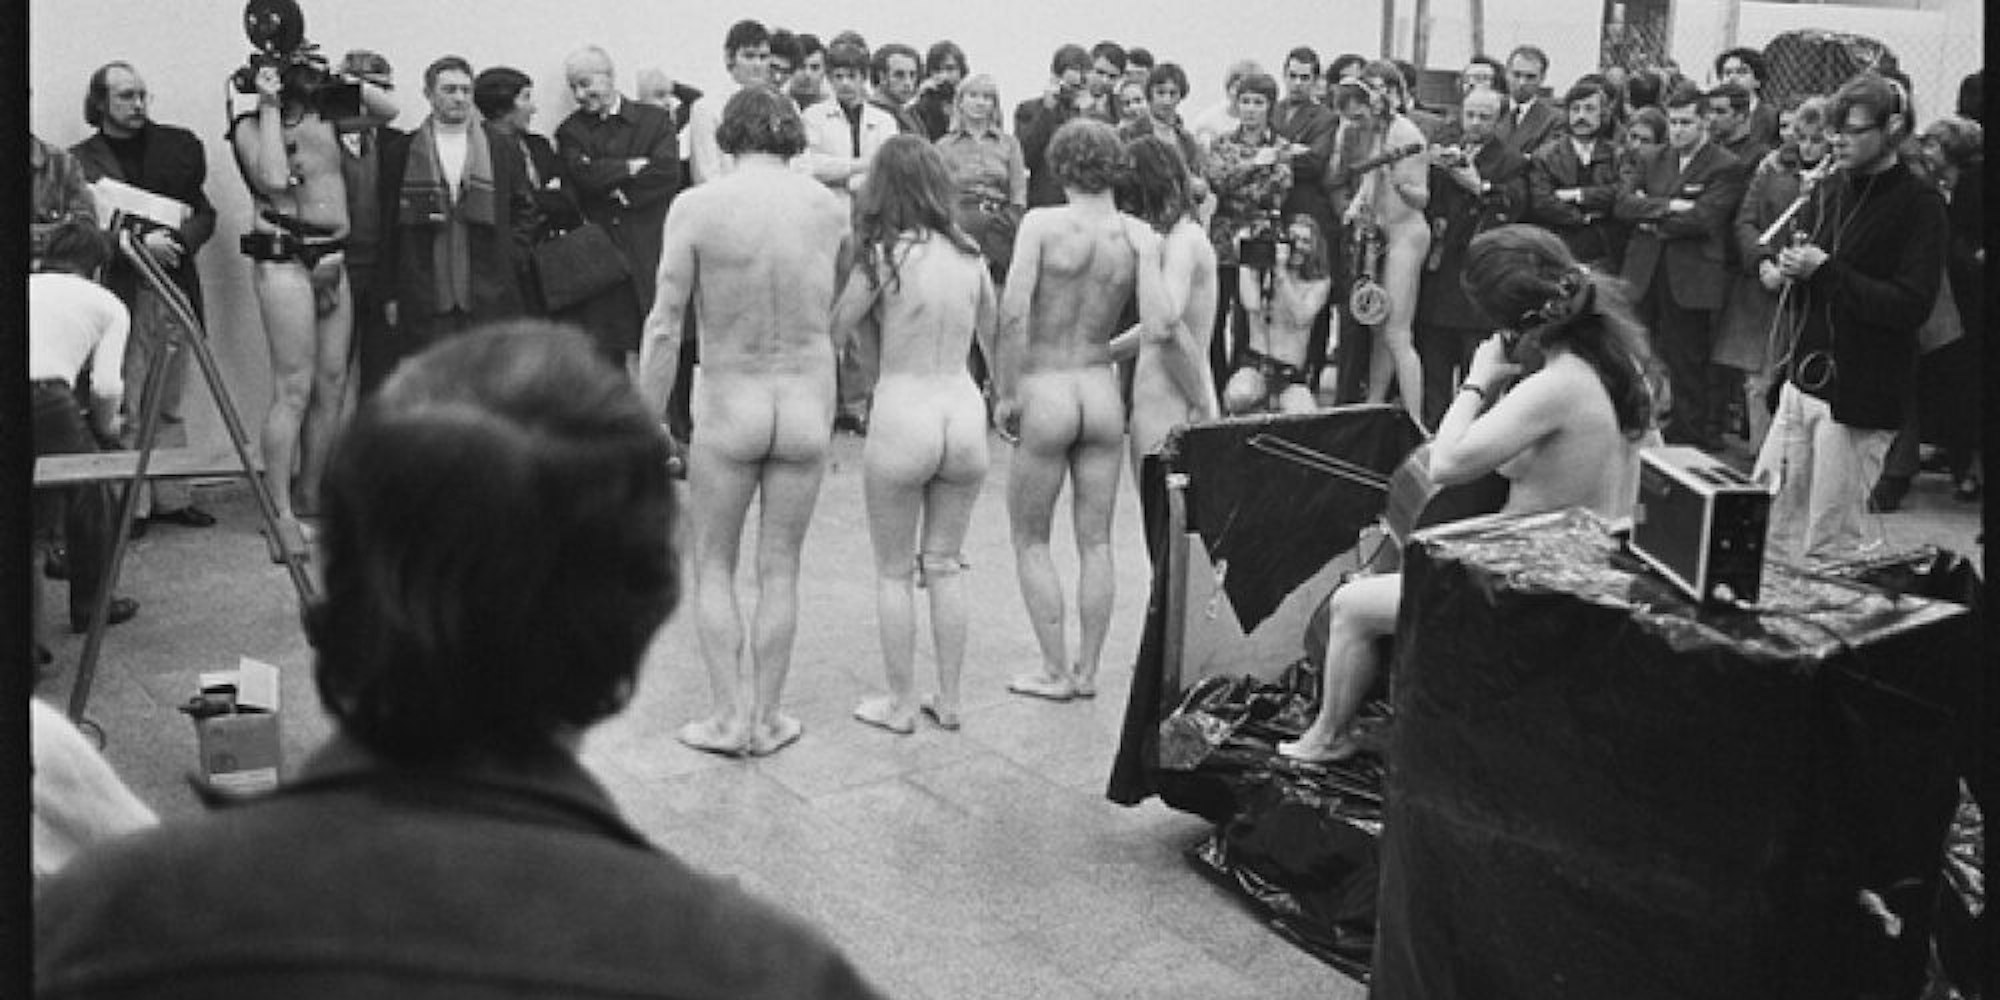 Aktion in der Kölner Ausstellung Happening & Fluxus, 1970-1971